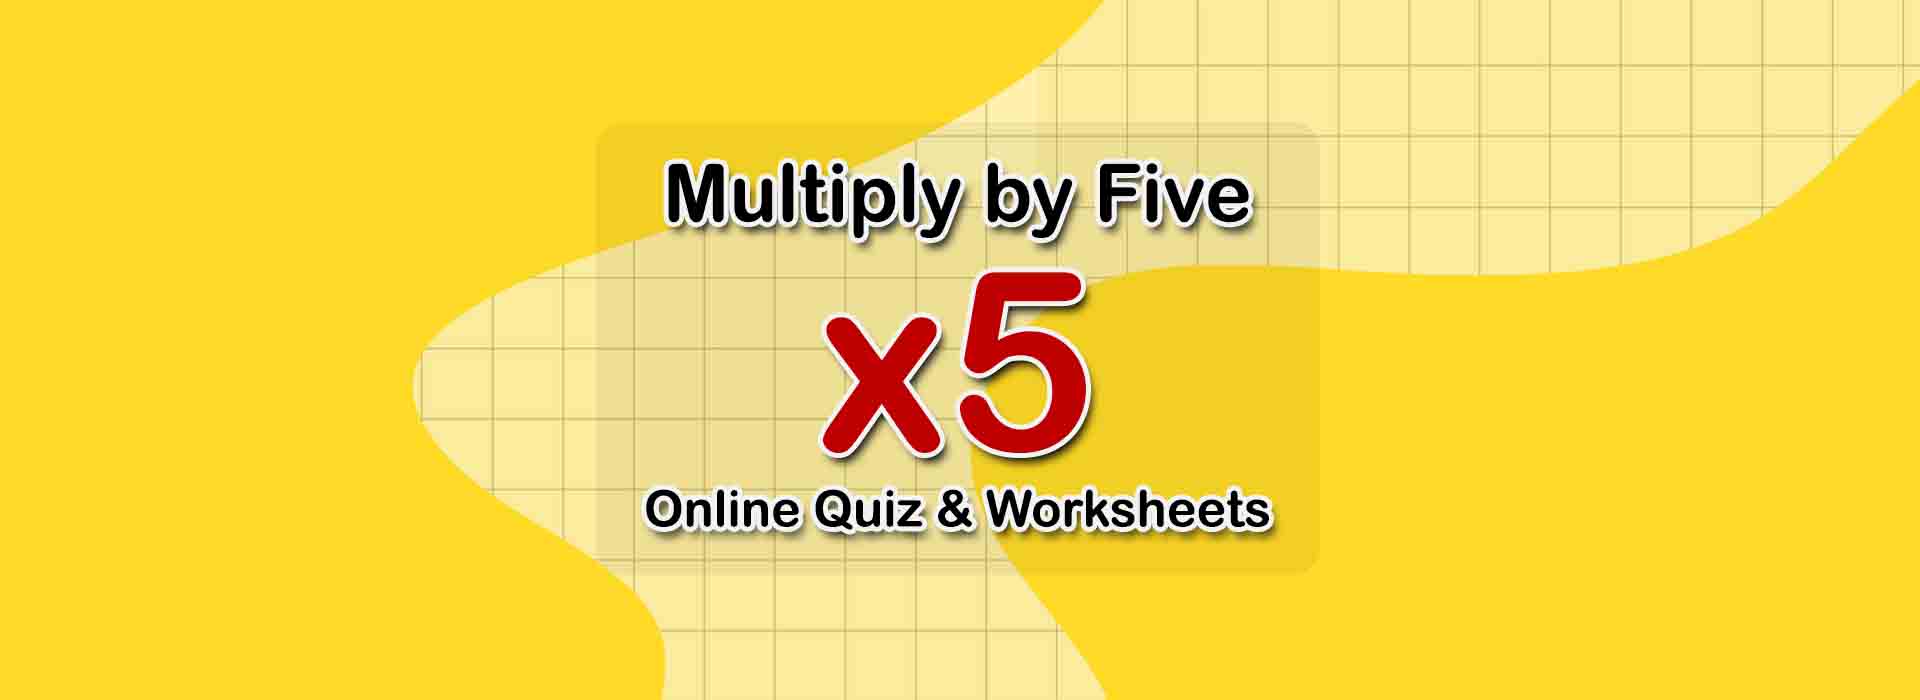 free-printable-multiplication-worksheets-printable-worksheets